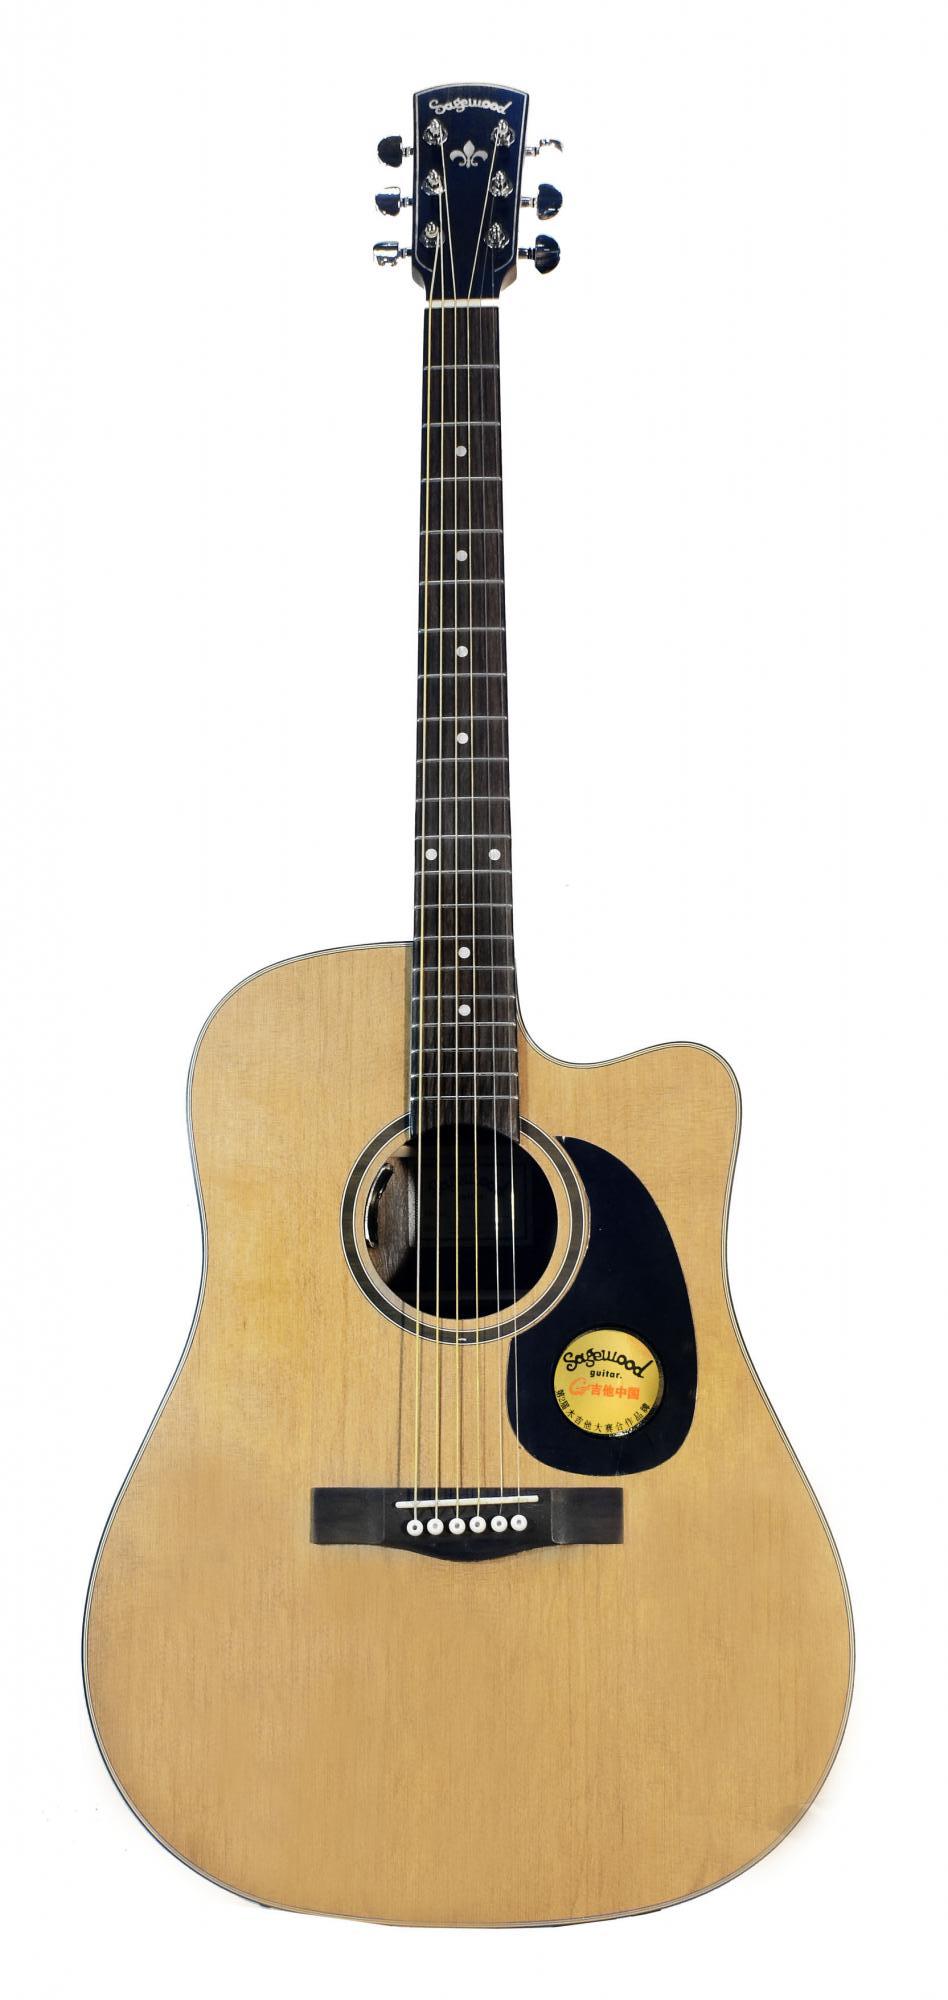 Изображение SAGEWOOD SD-70EQ Электроакустическая гитара с вырезом, цвет натуральный, лак матовый